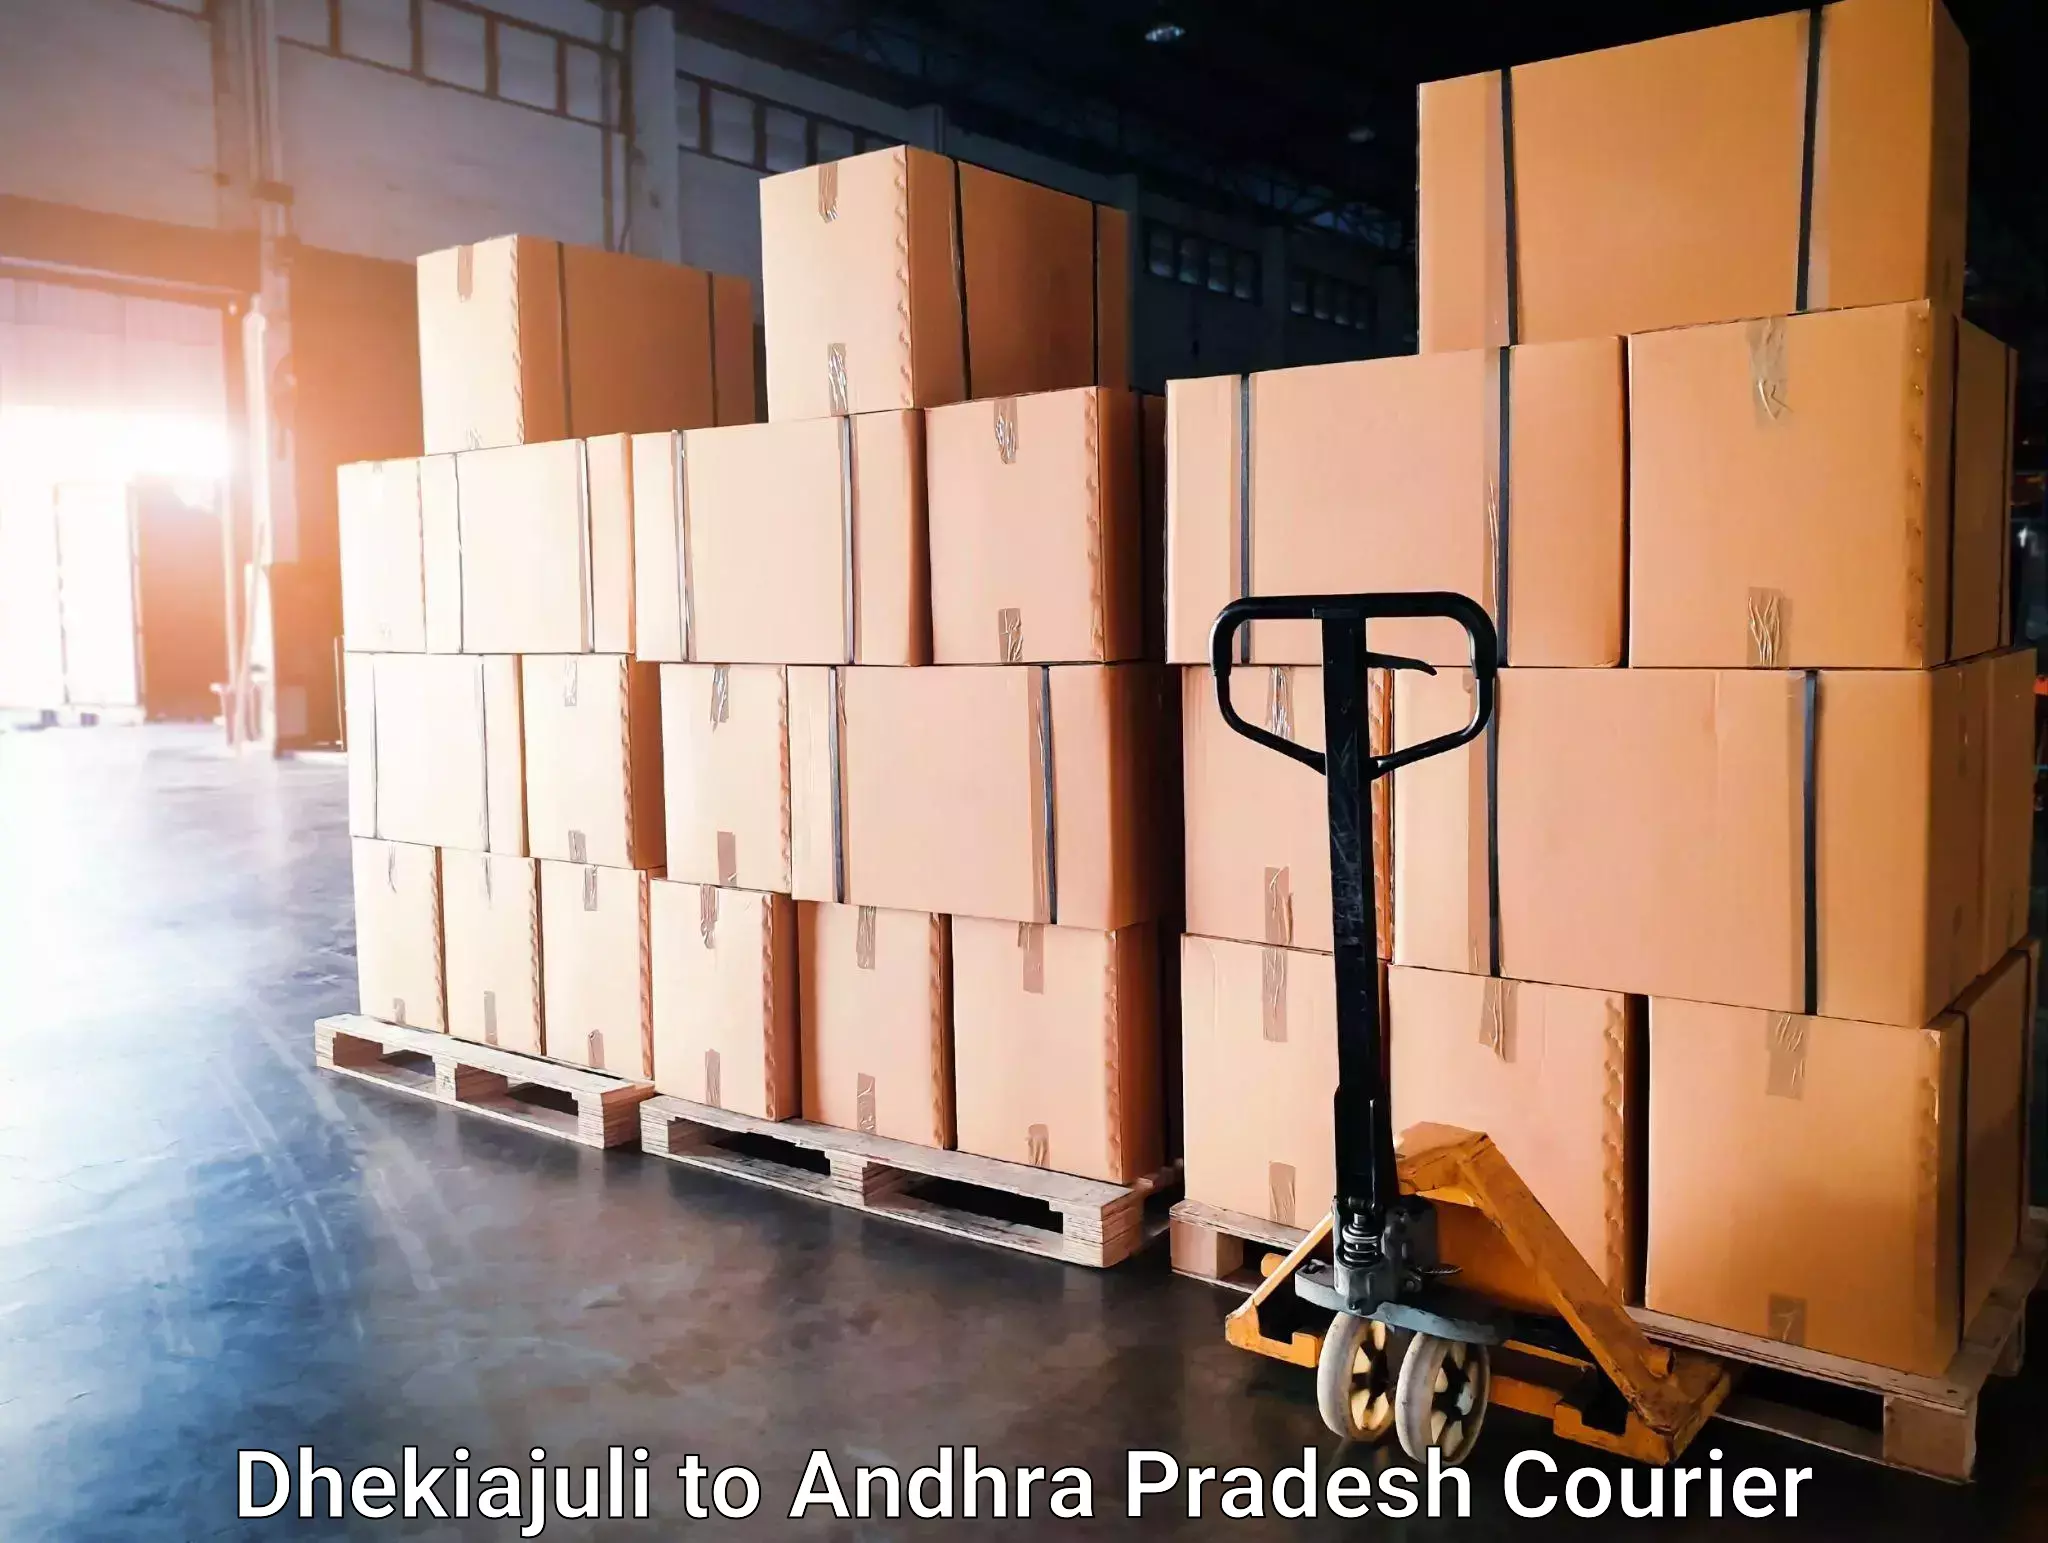 Business delivery service Dhekiajuli to Sarvepalli Nellore